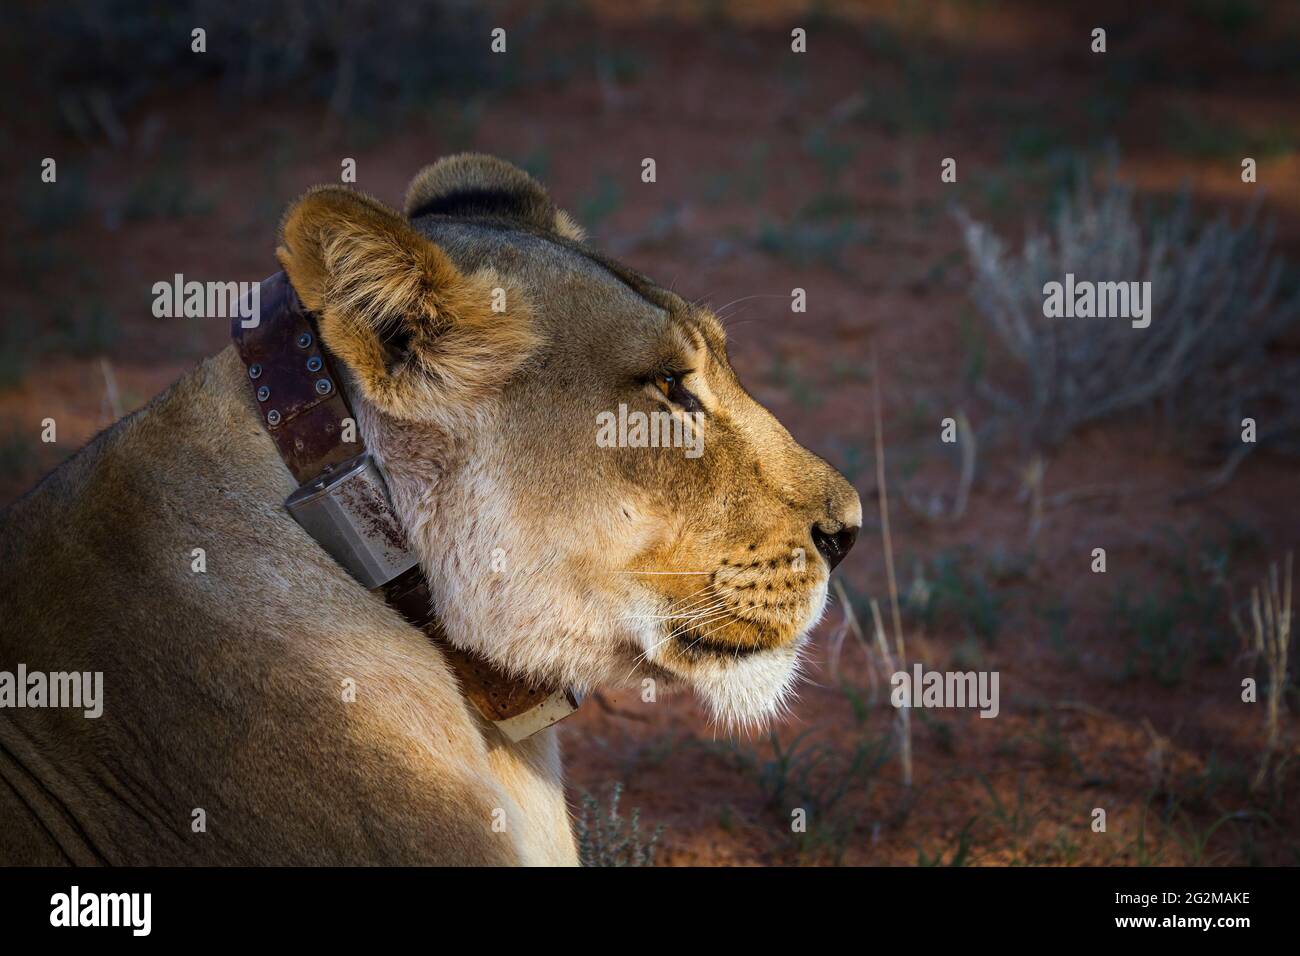 Afrikanisches Löwenporträt mit Funkkragen im Kgalagadi Transfrontier Park, Südafrika; specie panthera leo Familie der felidae Stockfoto